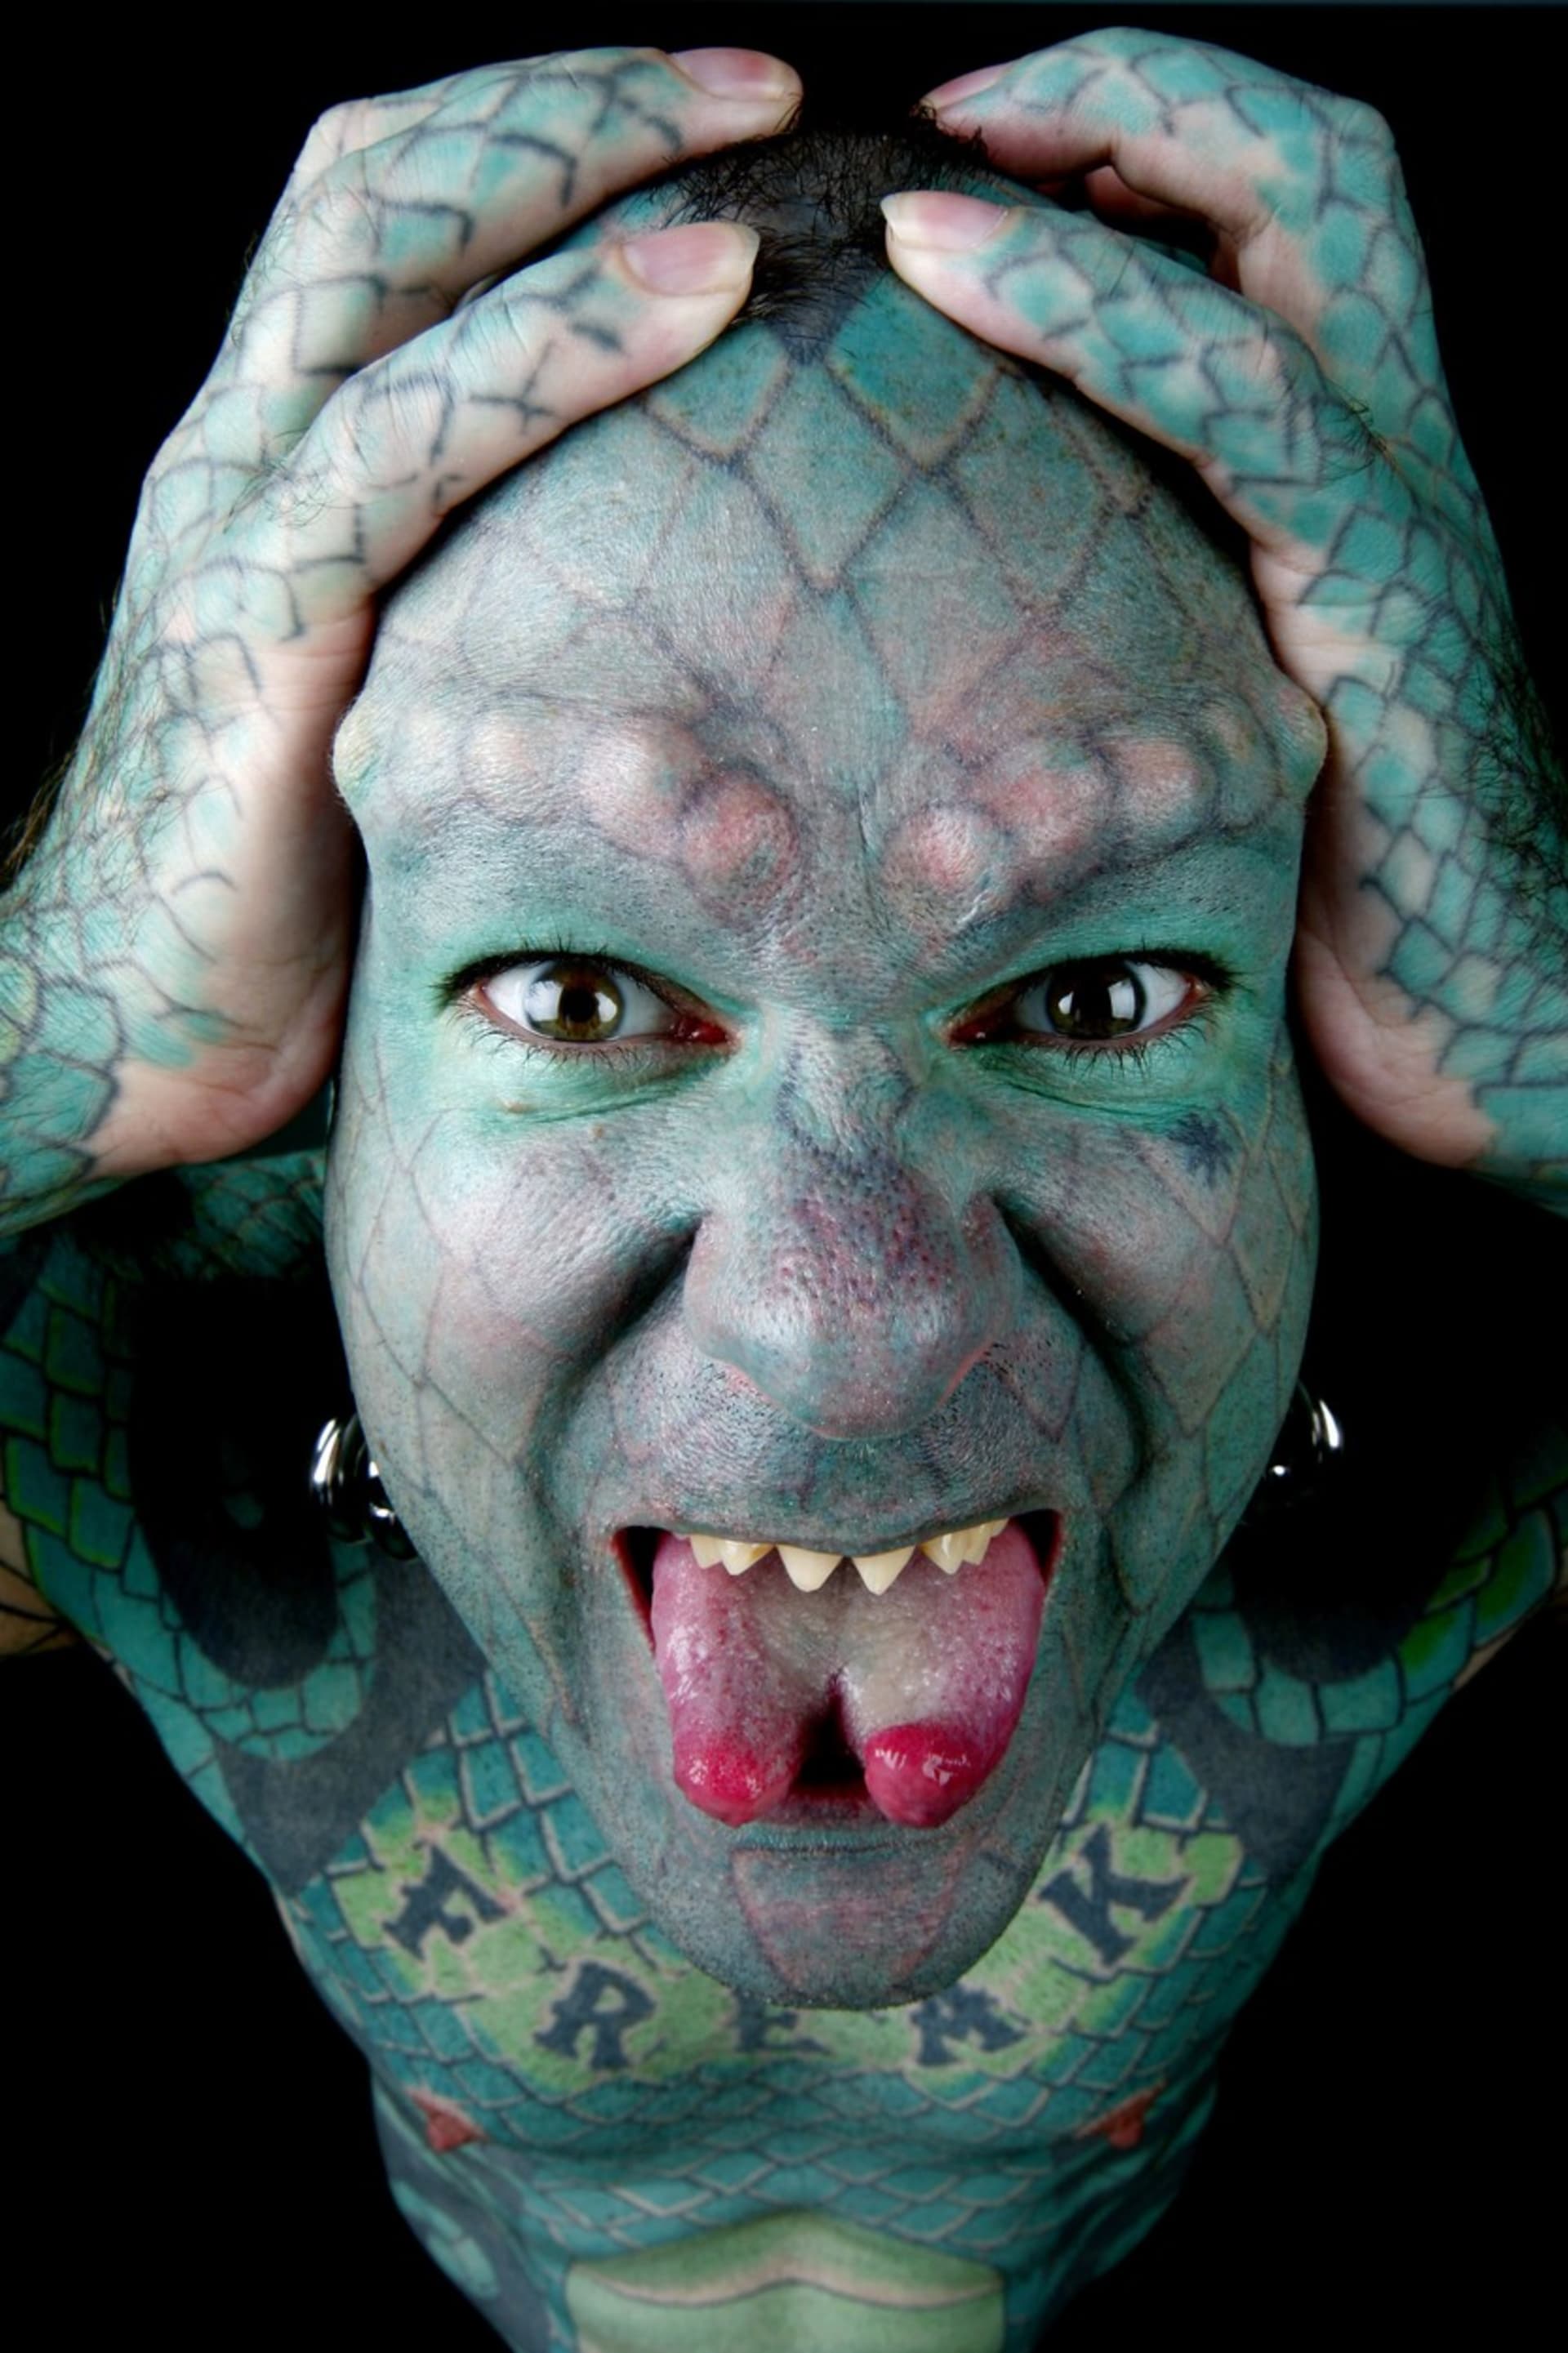 Erik Sprague - The Lizardman - kromě tetování, které mu pokrývá celé tělo, má také vybroušené zuby, rozpůlený jazyk a podkožní implantáty.